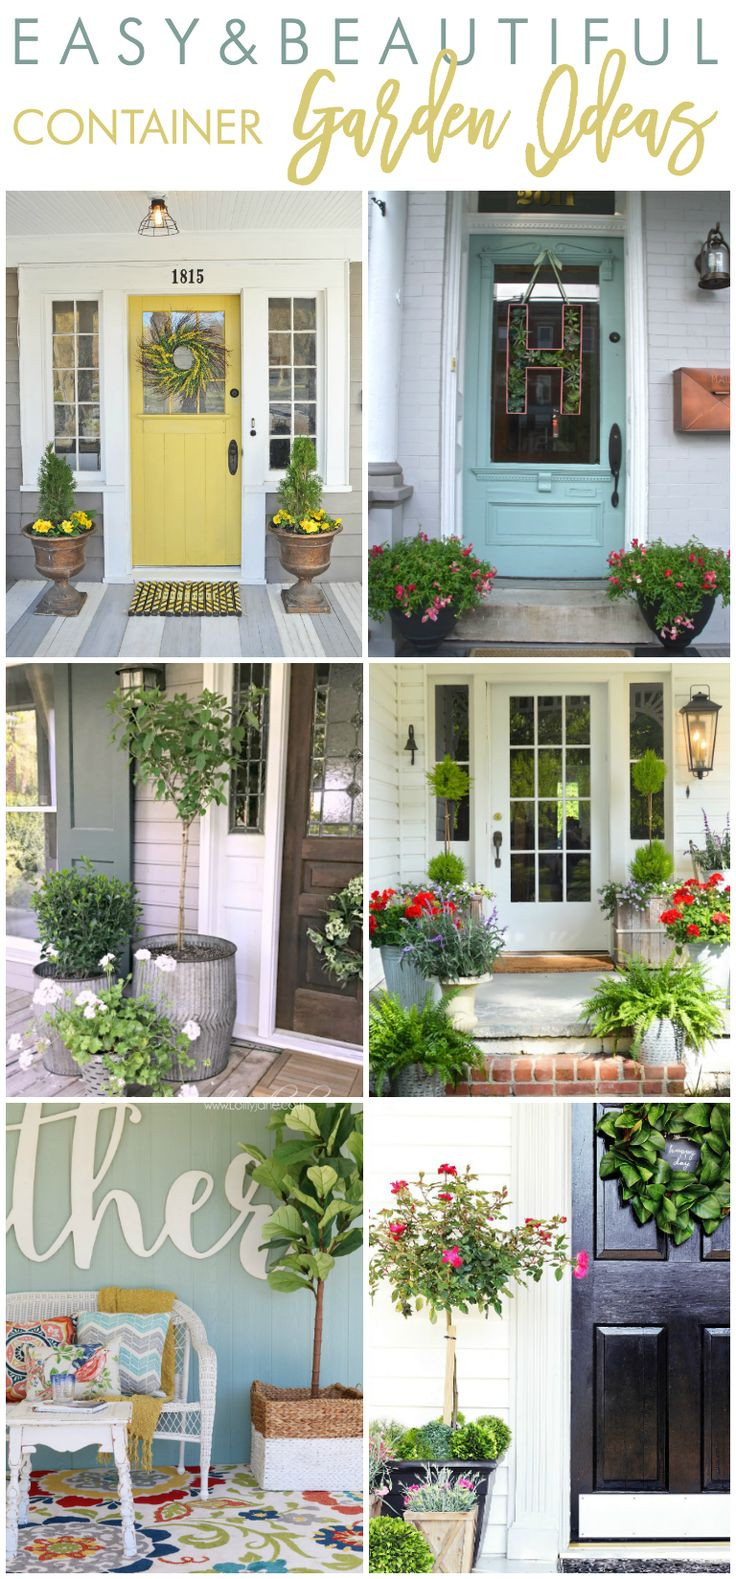 Best ideas about Front Porch Planter Ideas
. Save or Pin Best 25 Front porch planters ideas on Pinterest Now.